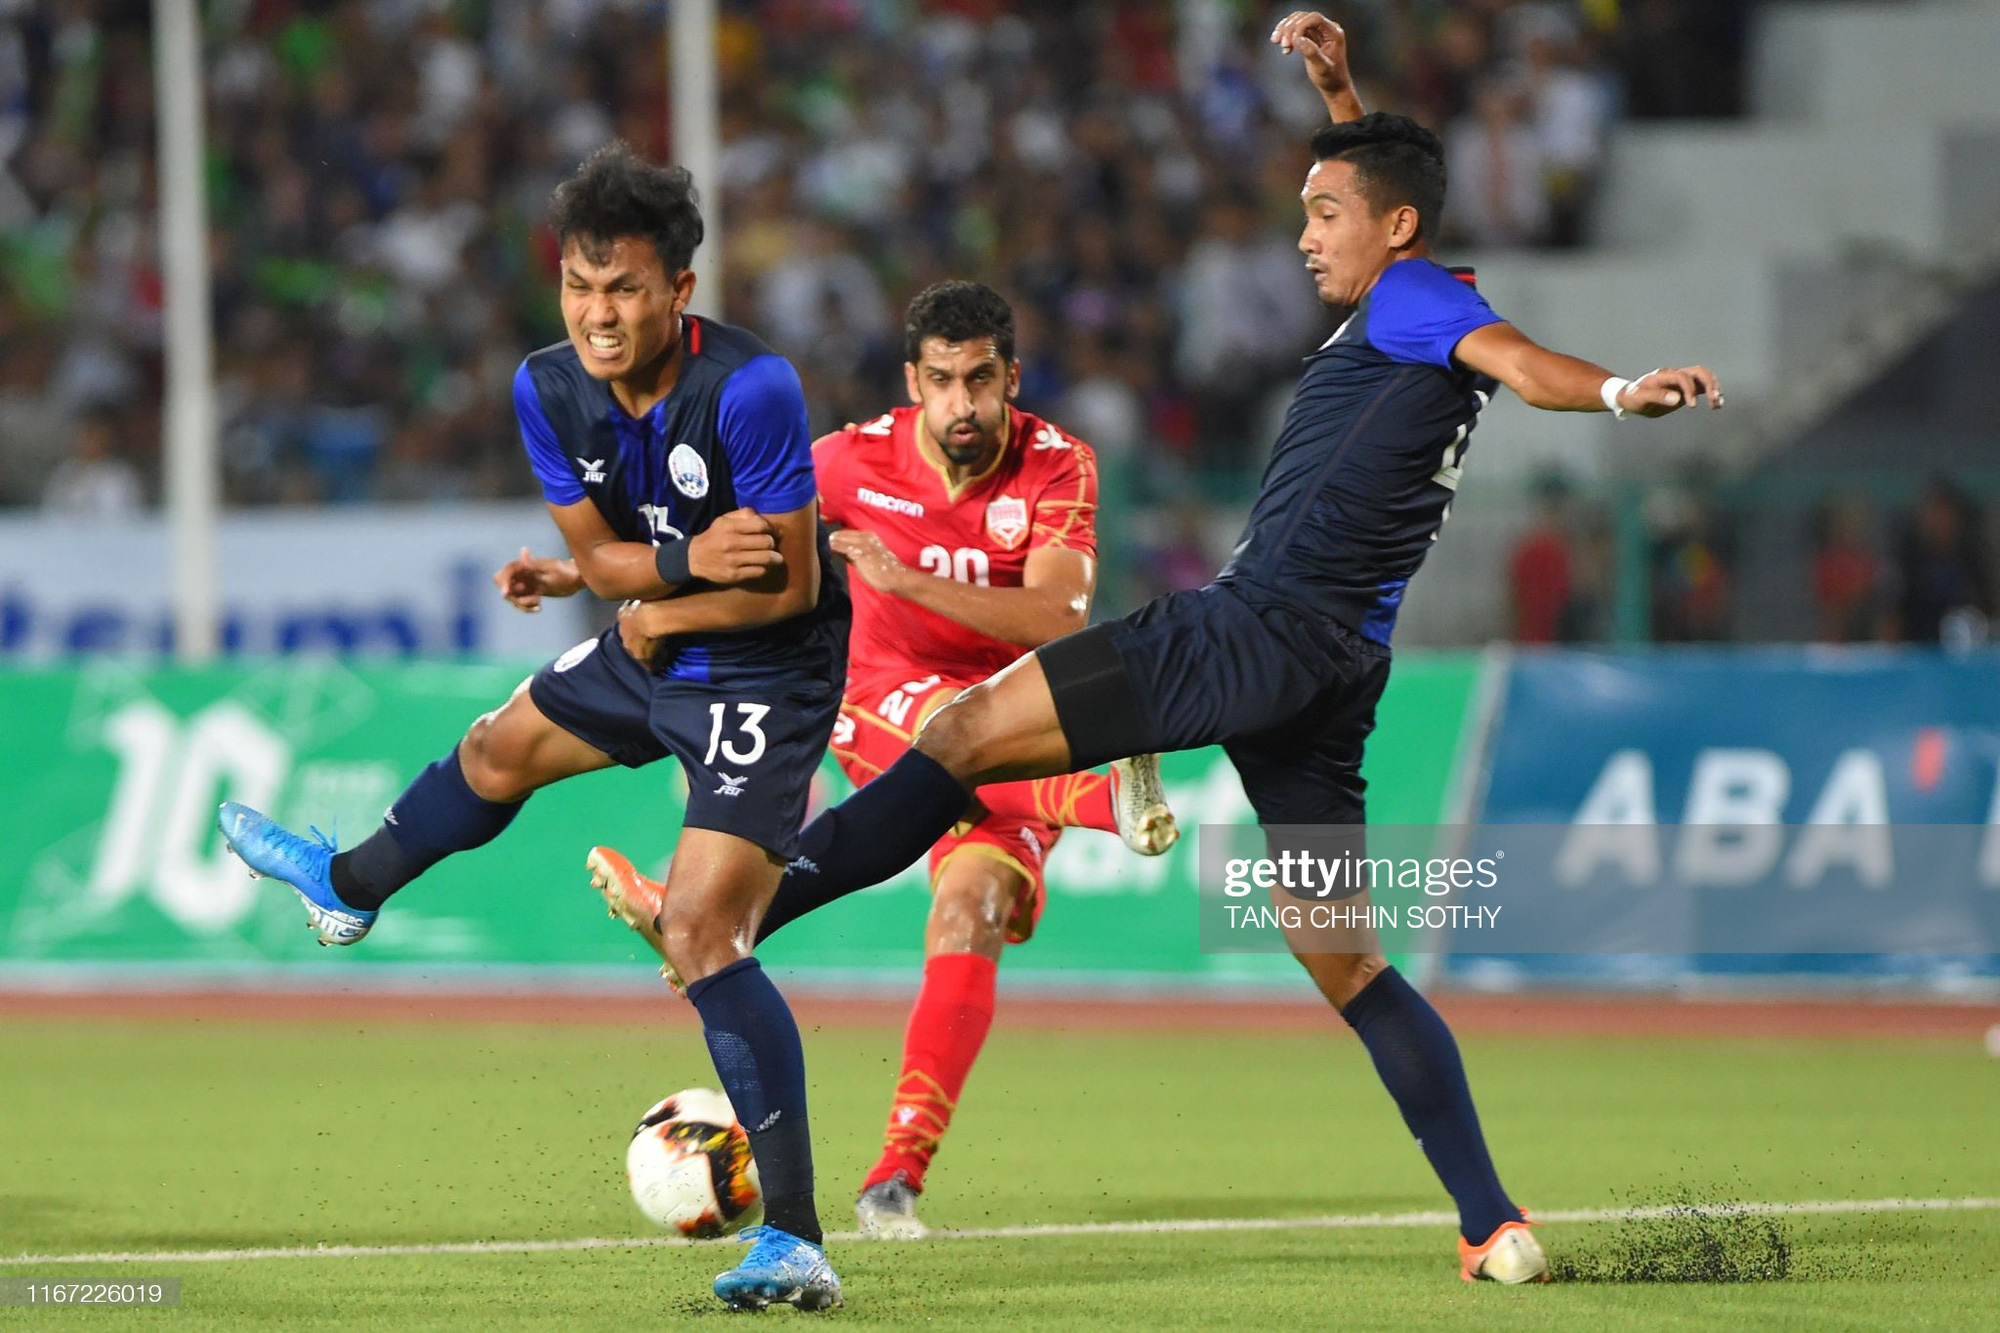 Campuchia phá kỷ lục tại vòng loại World Cup sau thất bại kinh hoàng - Ảnh 2.